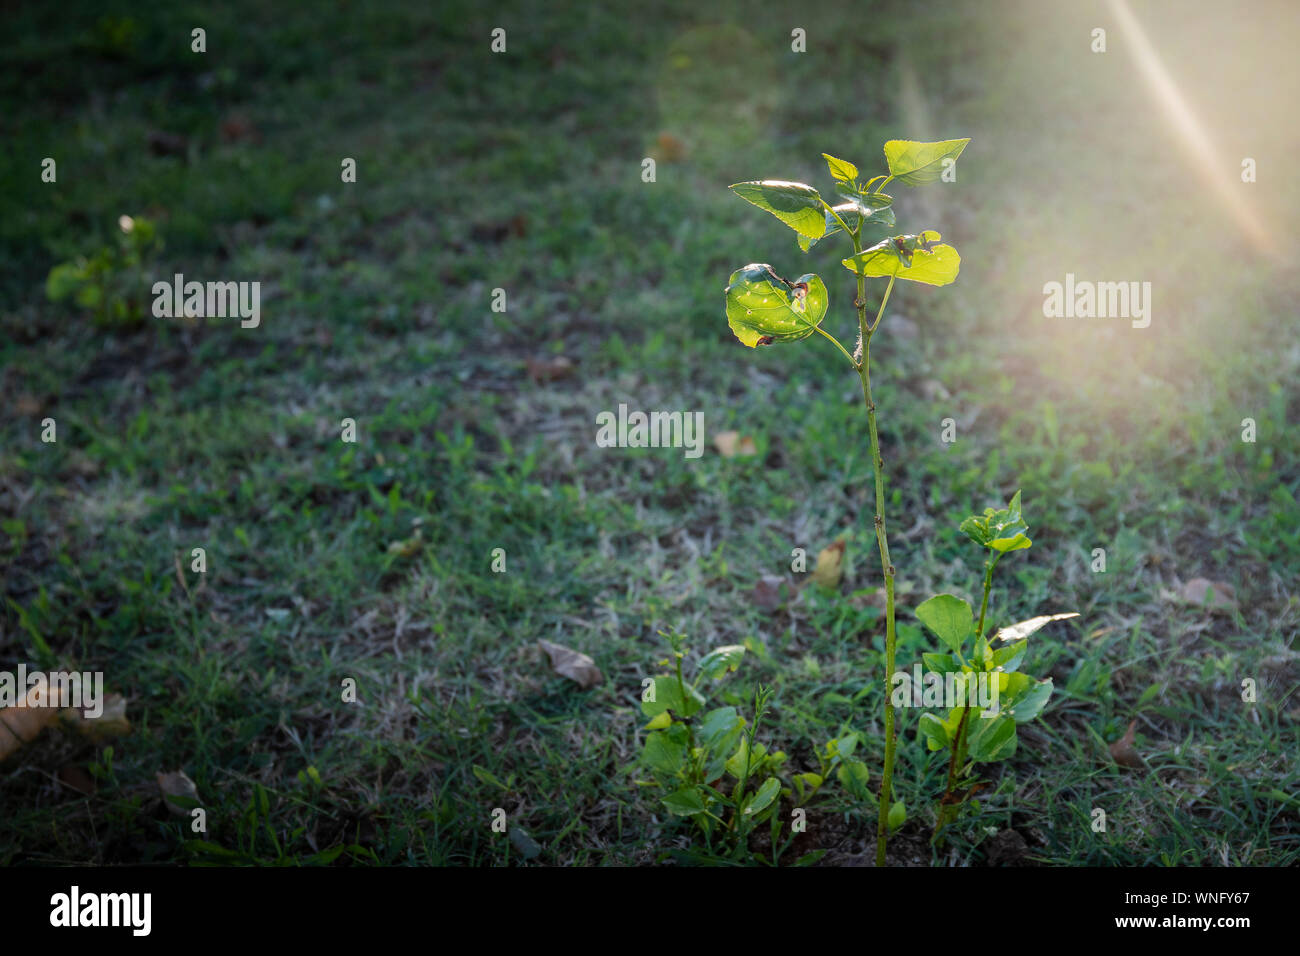 L'herbe verte avec une plante différente ou de mauvaises herbes éclairée par des rayons de lumière chaude à l'heure d'or. Arrière-plan de croissance avec copie espace et arrondi. Banque D'Images